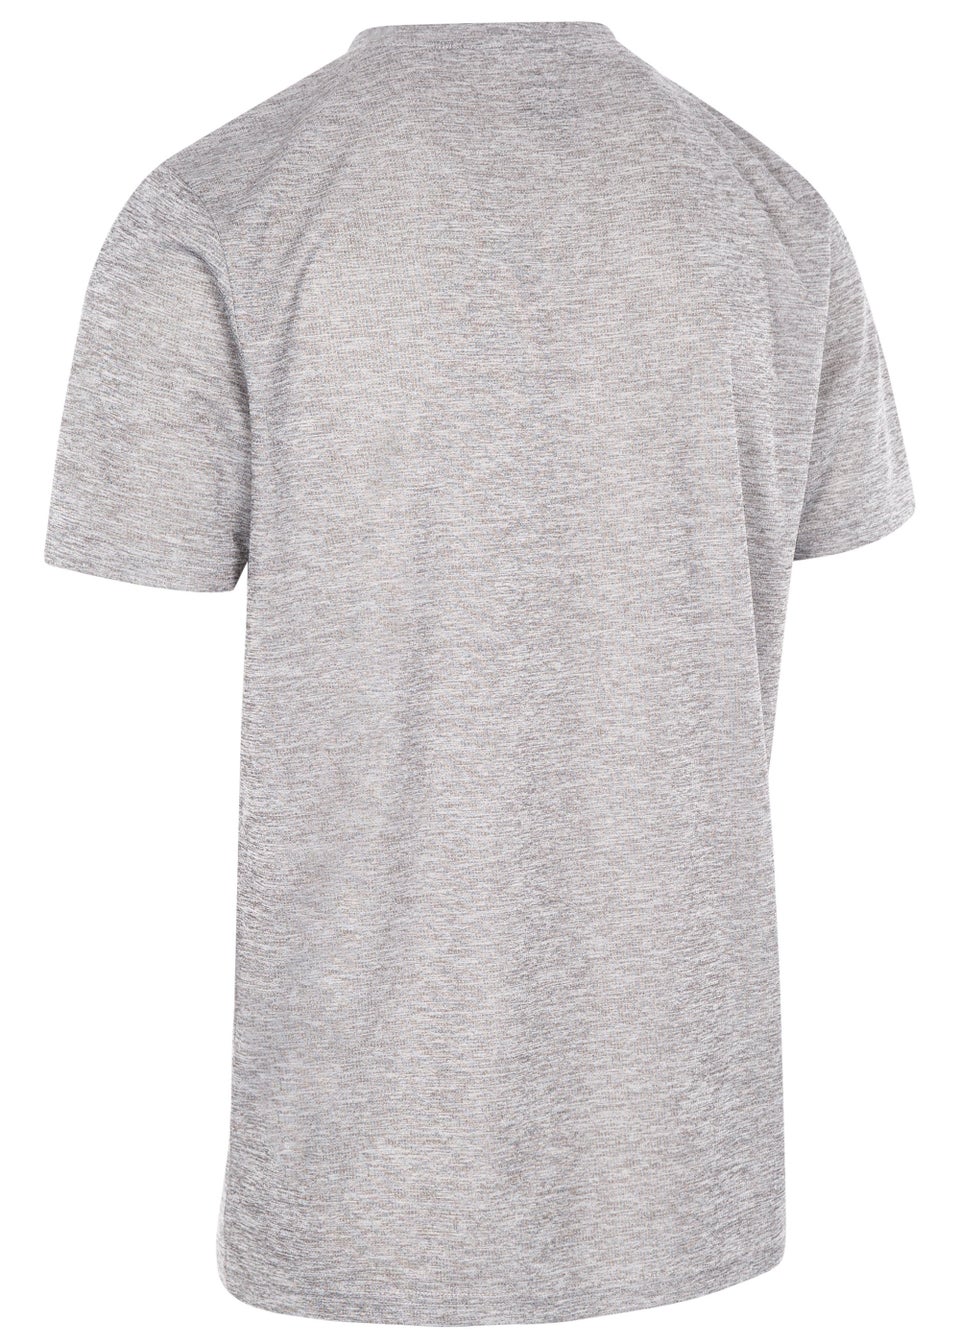 Trespass Raeran Grey Technical T-Shirt